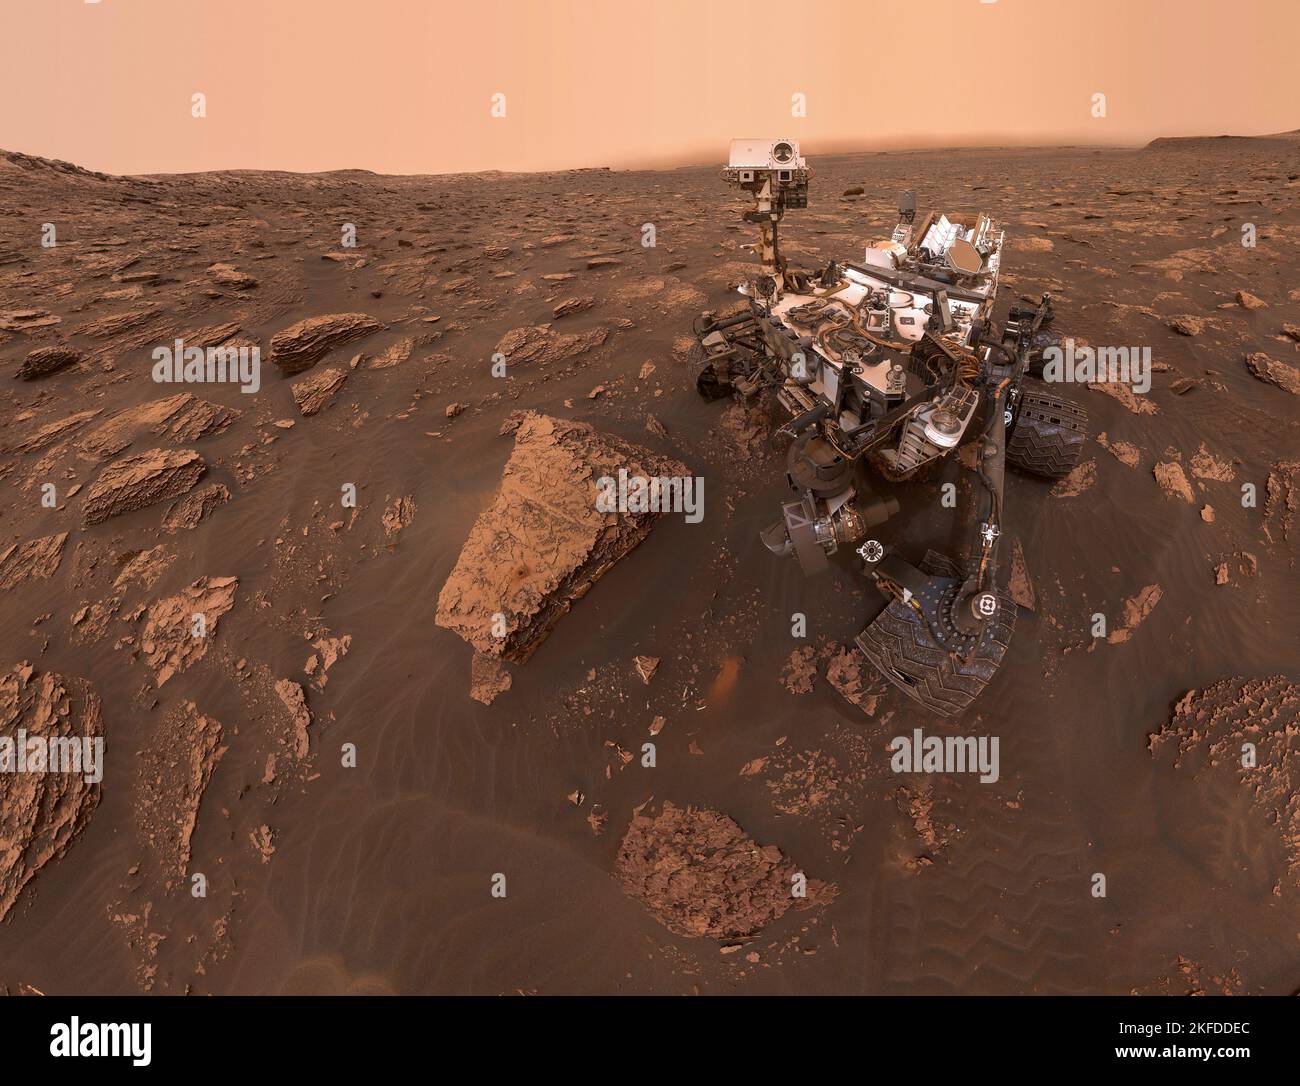 Neugierde Rover auf dem Planeten Mars. Mars sieht aus wie eine Wüstenumgebung mit roten, moschusartigen Tönen. Elemente dieses Bildes, die von der NASA eingerichtet wurden Stockfoto